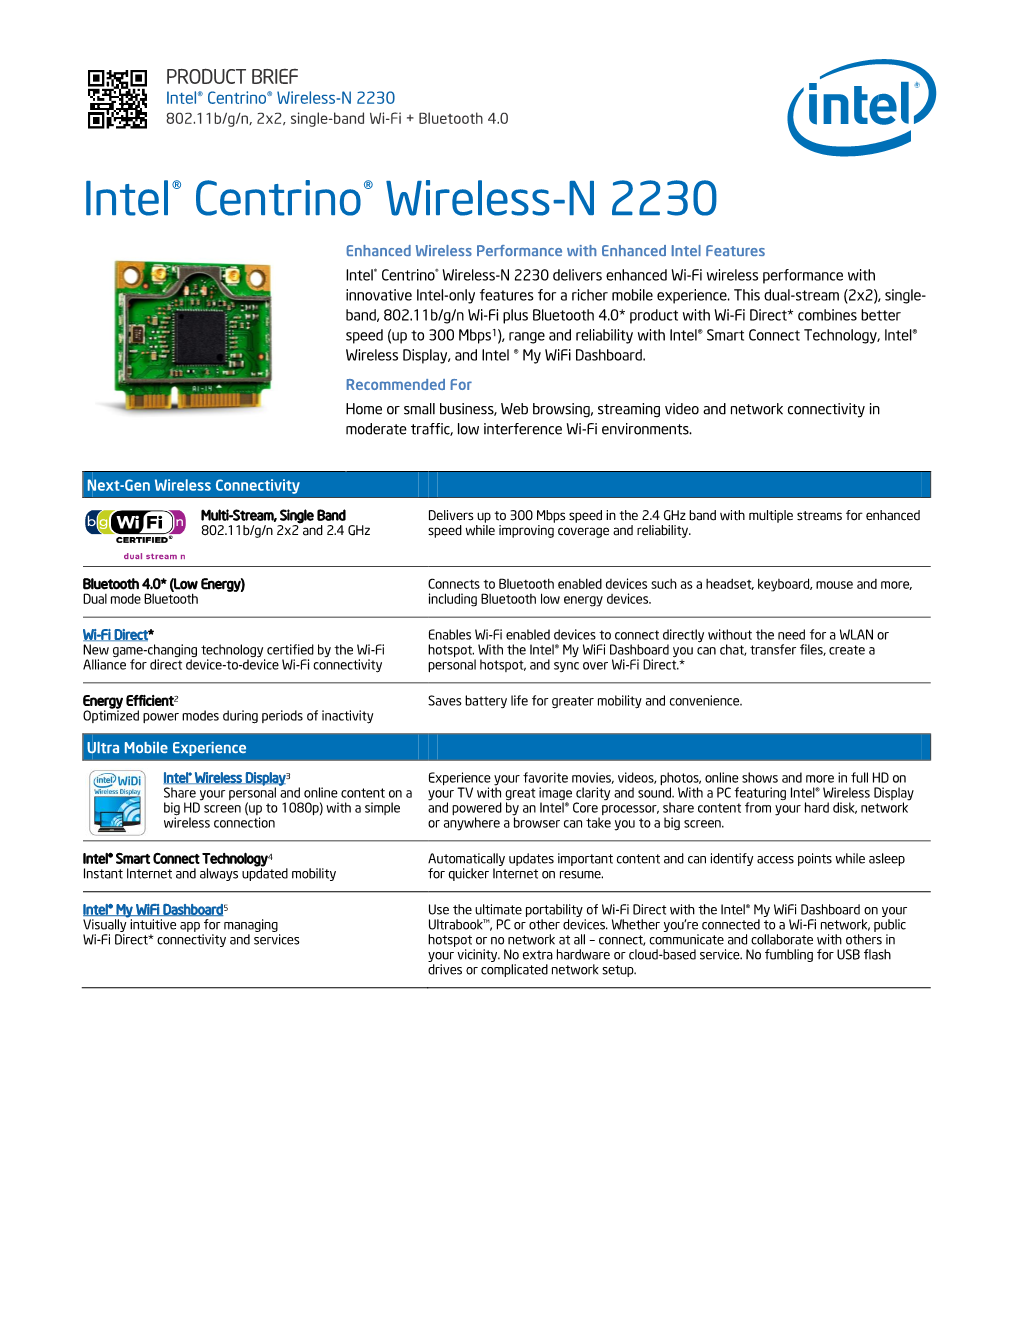 Intel® Centrino® Wireless-N 2230 802.11B/G/N, 2X2, Single-Band Wi-Fi + Bluetooth 4.0